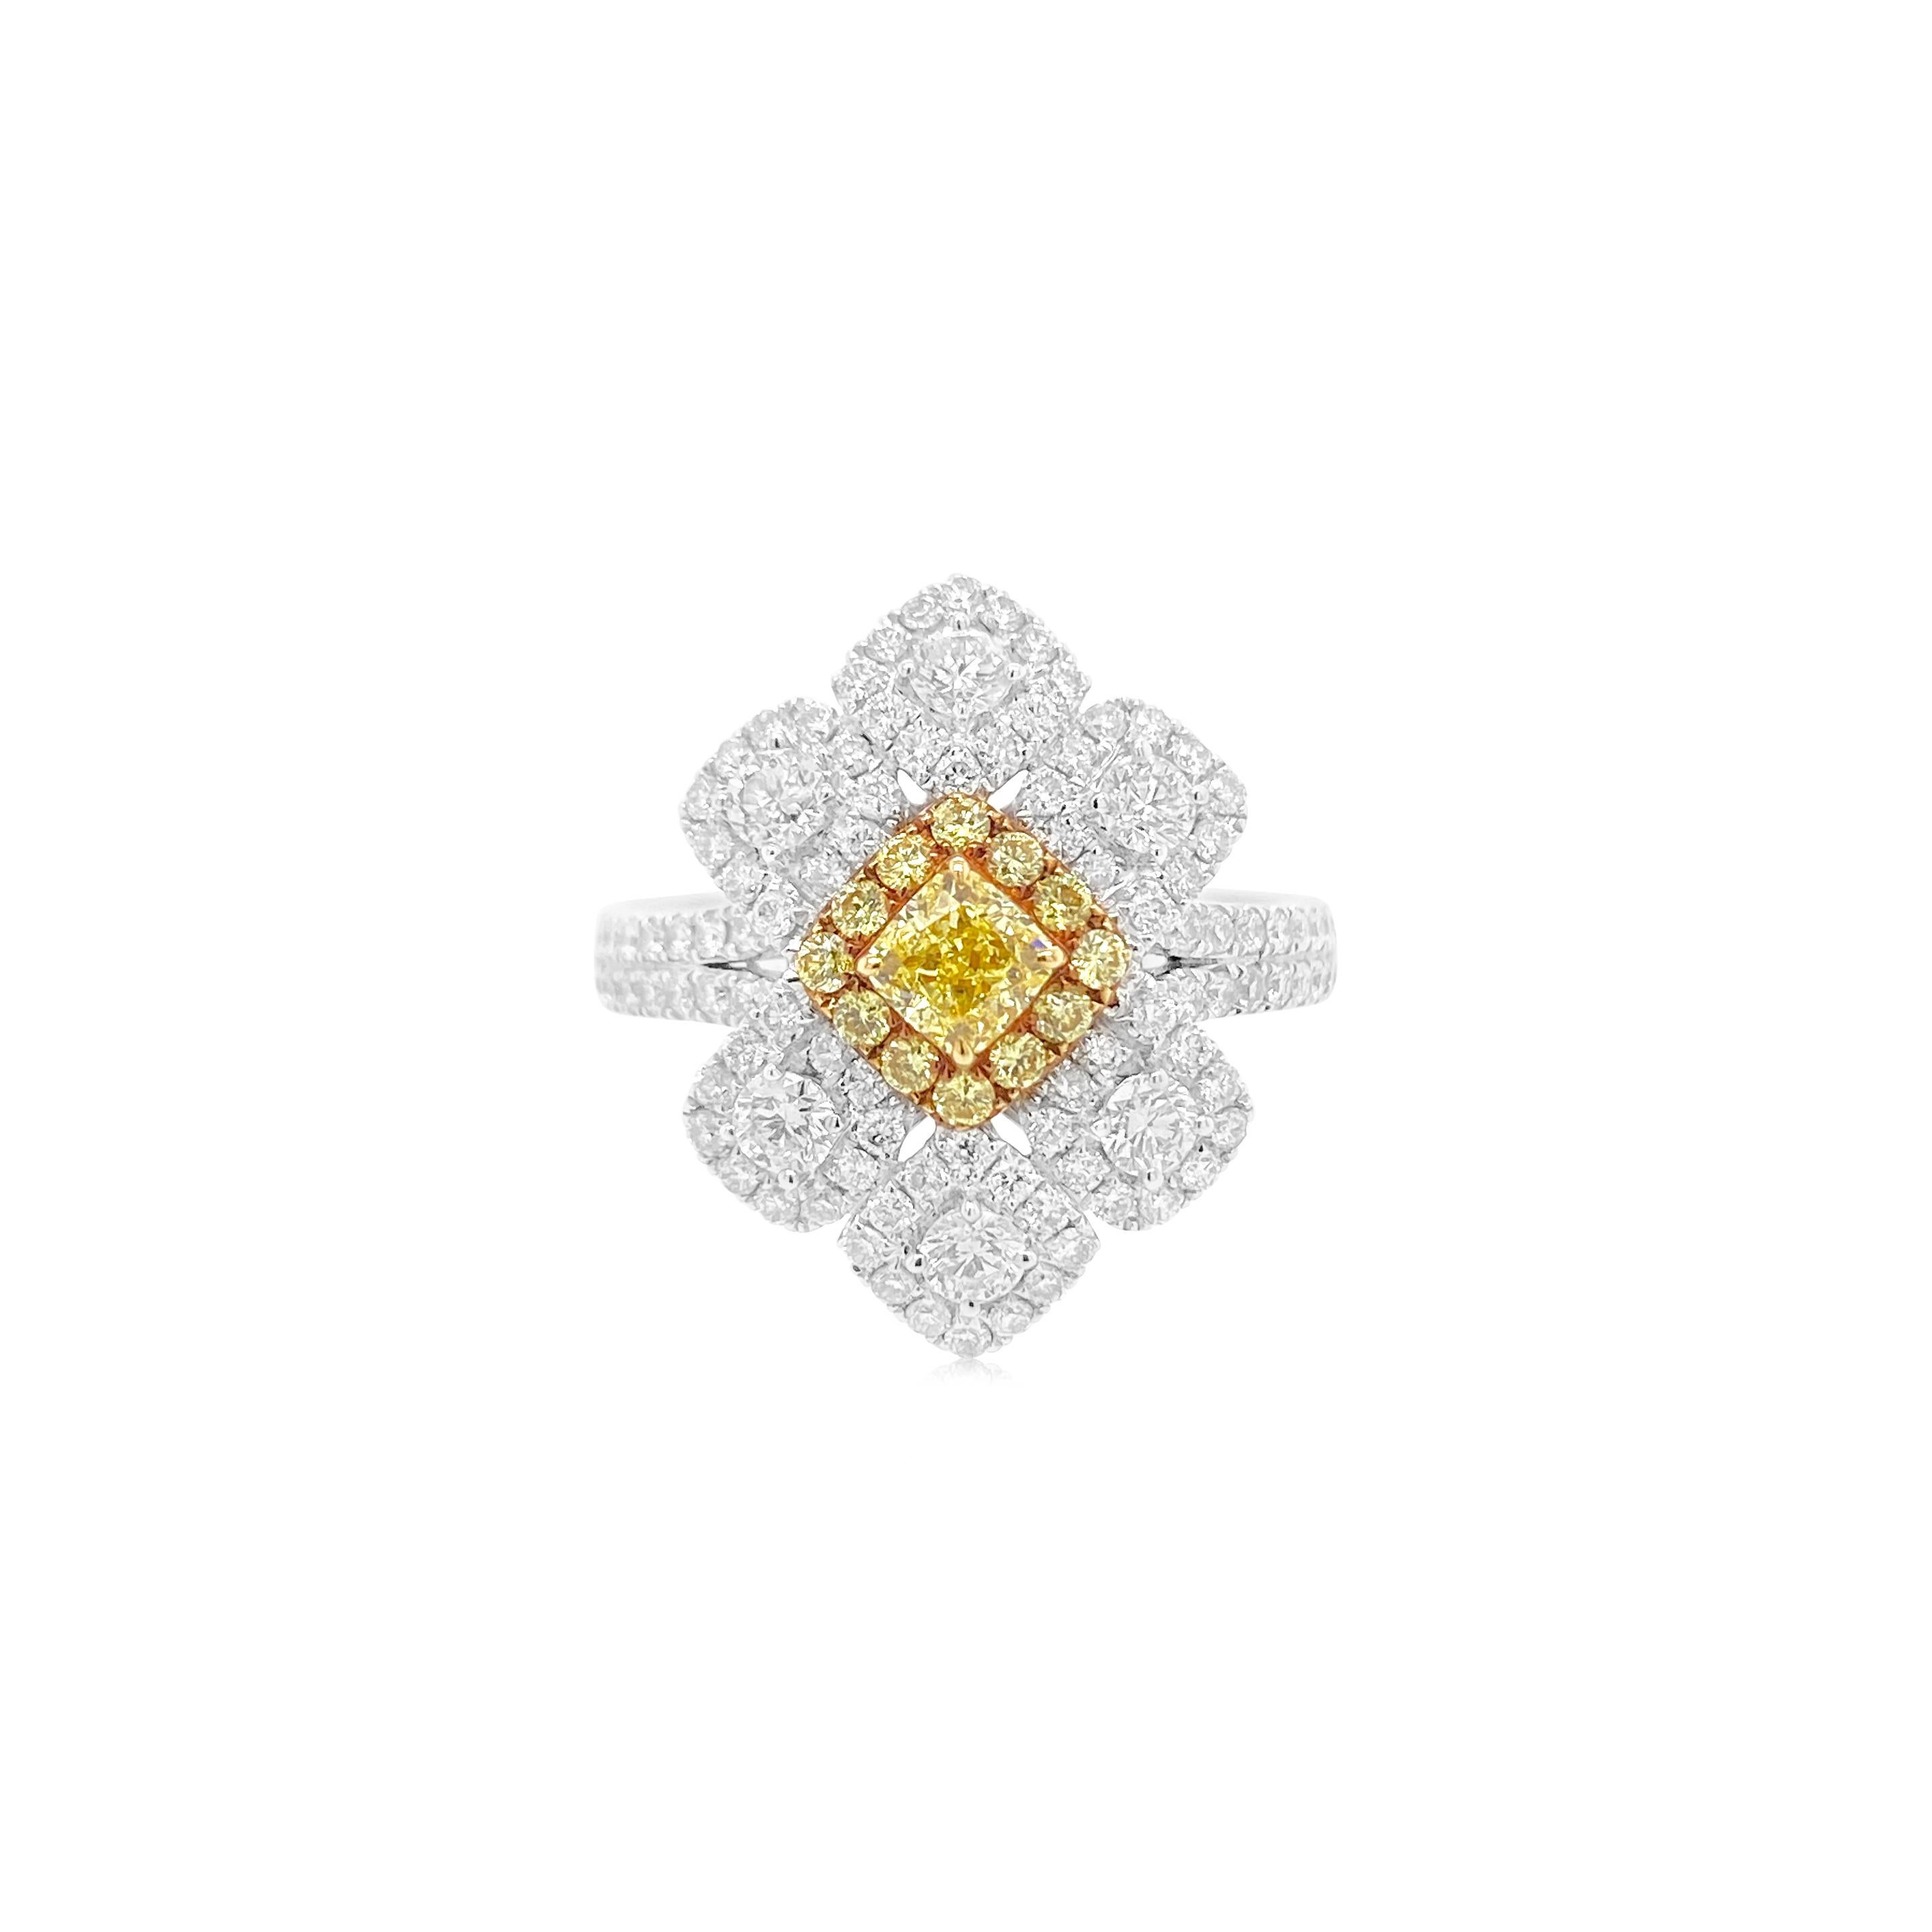 Dieser strahlende Cocktailring ist von den blühenden Blumen des Frühlings inspiriert. Fühlen Sie sich verjüngt und inspiriert mit diesem Ring mit einem zertifizierten intensiv gelben Diamanten in der Mitte, verziert mit weißen